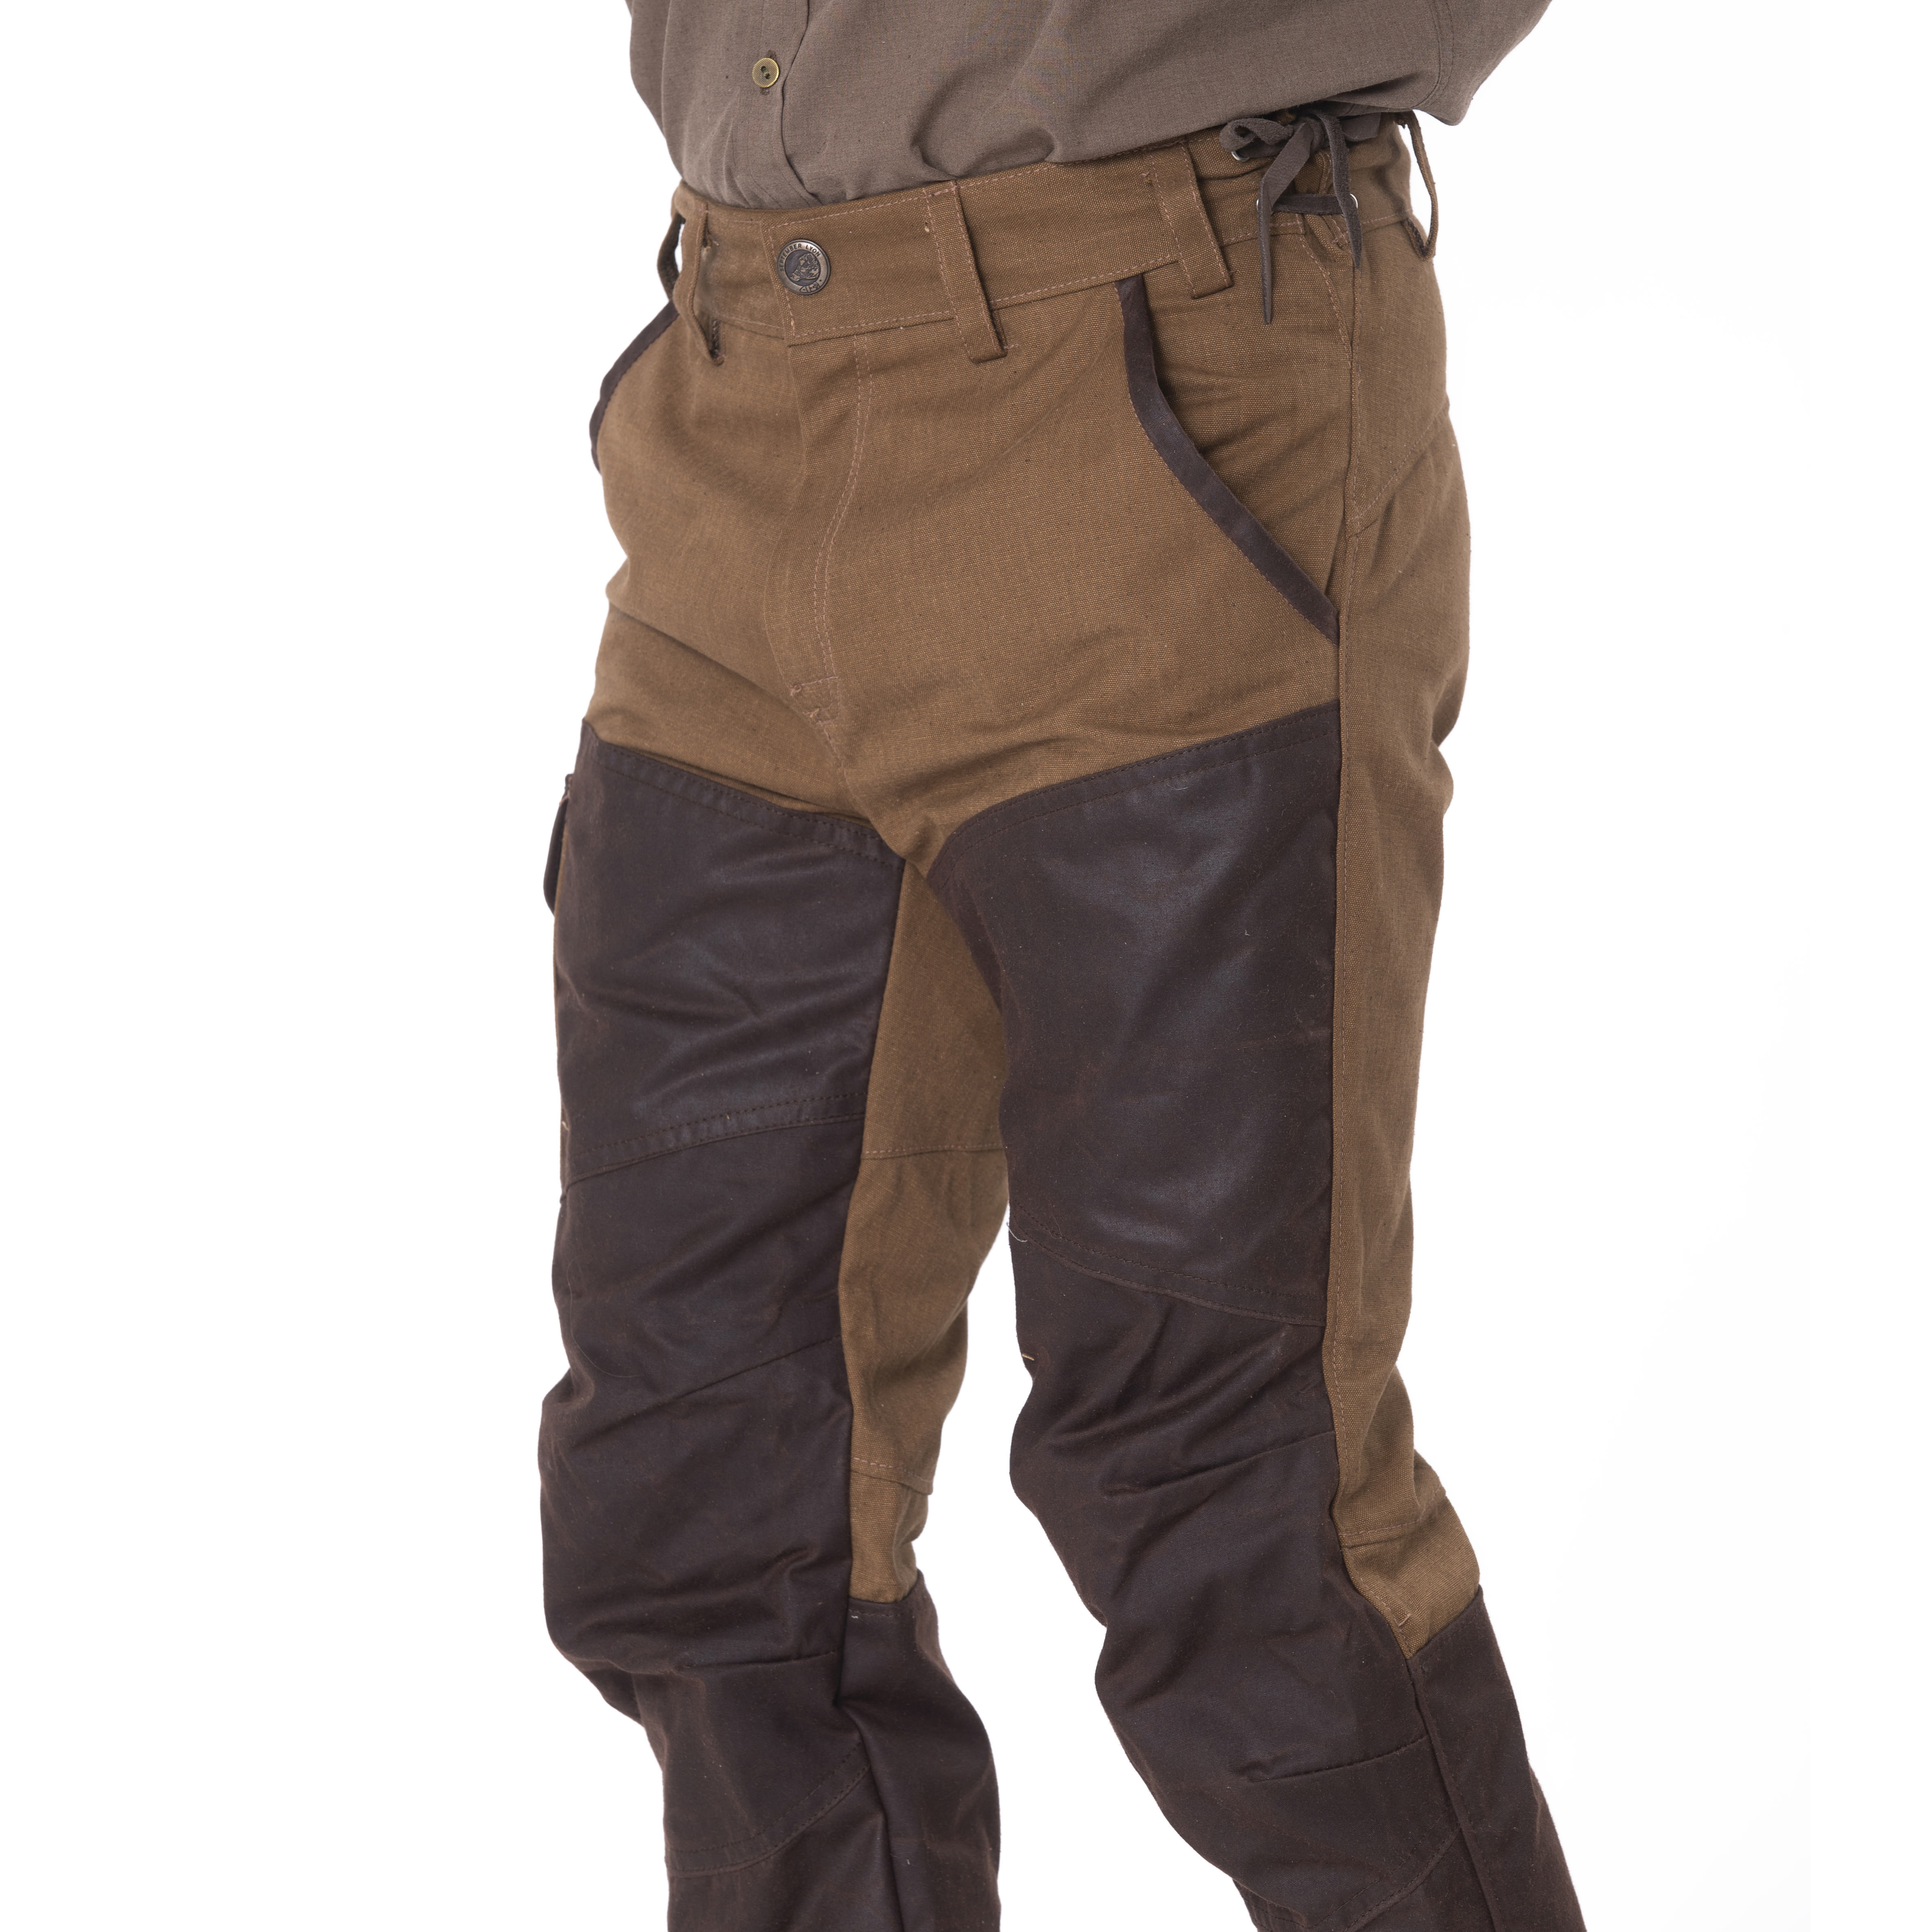 Pantalon homme en coton huilé authentique bicolore taille 36 fabriqué aux  États